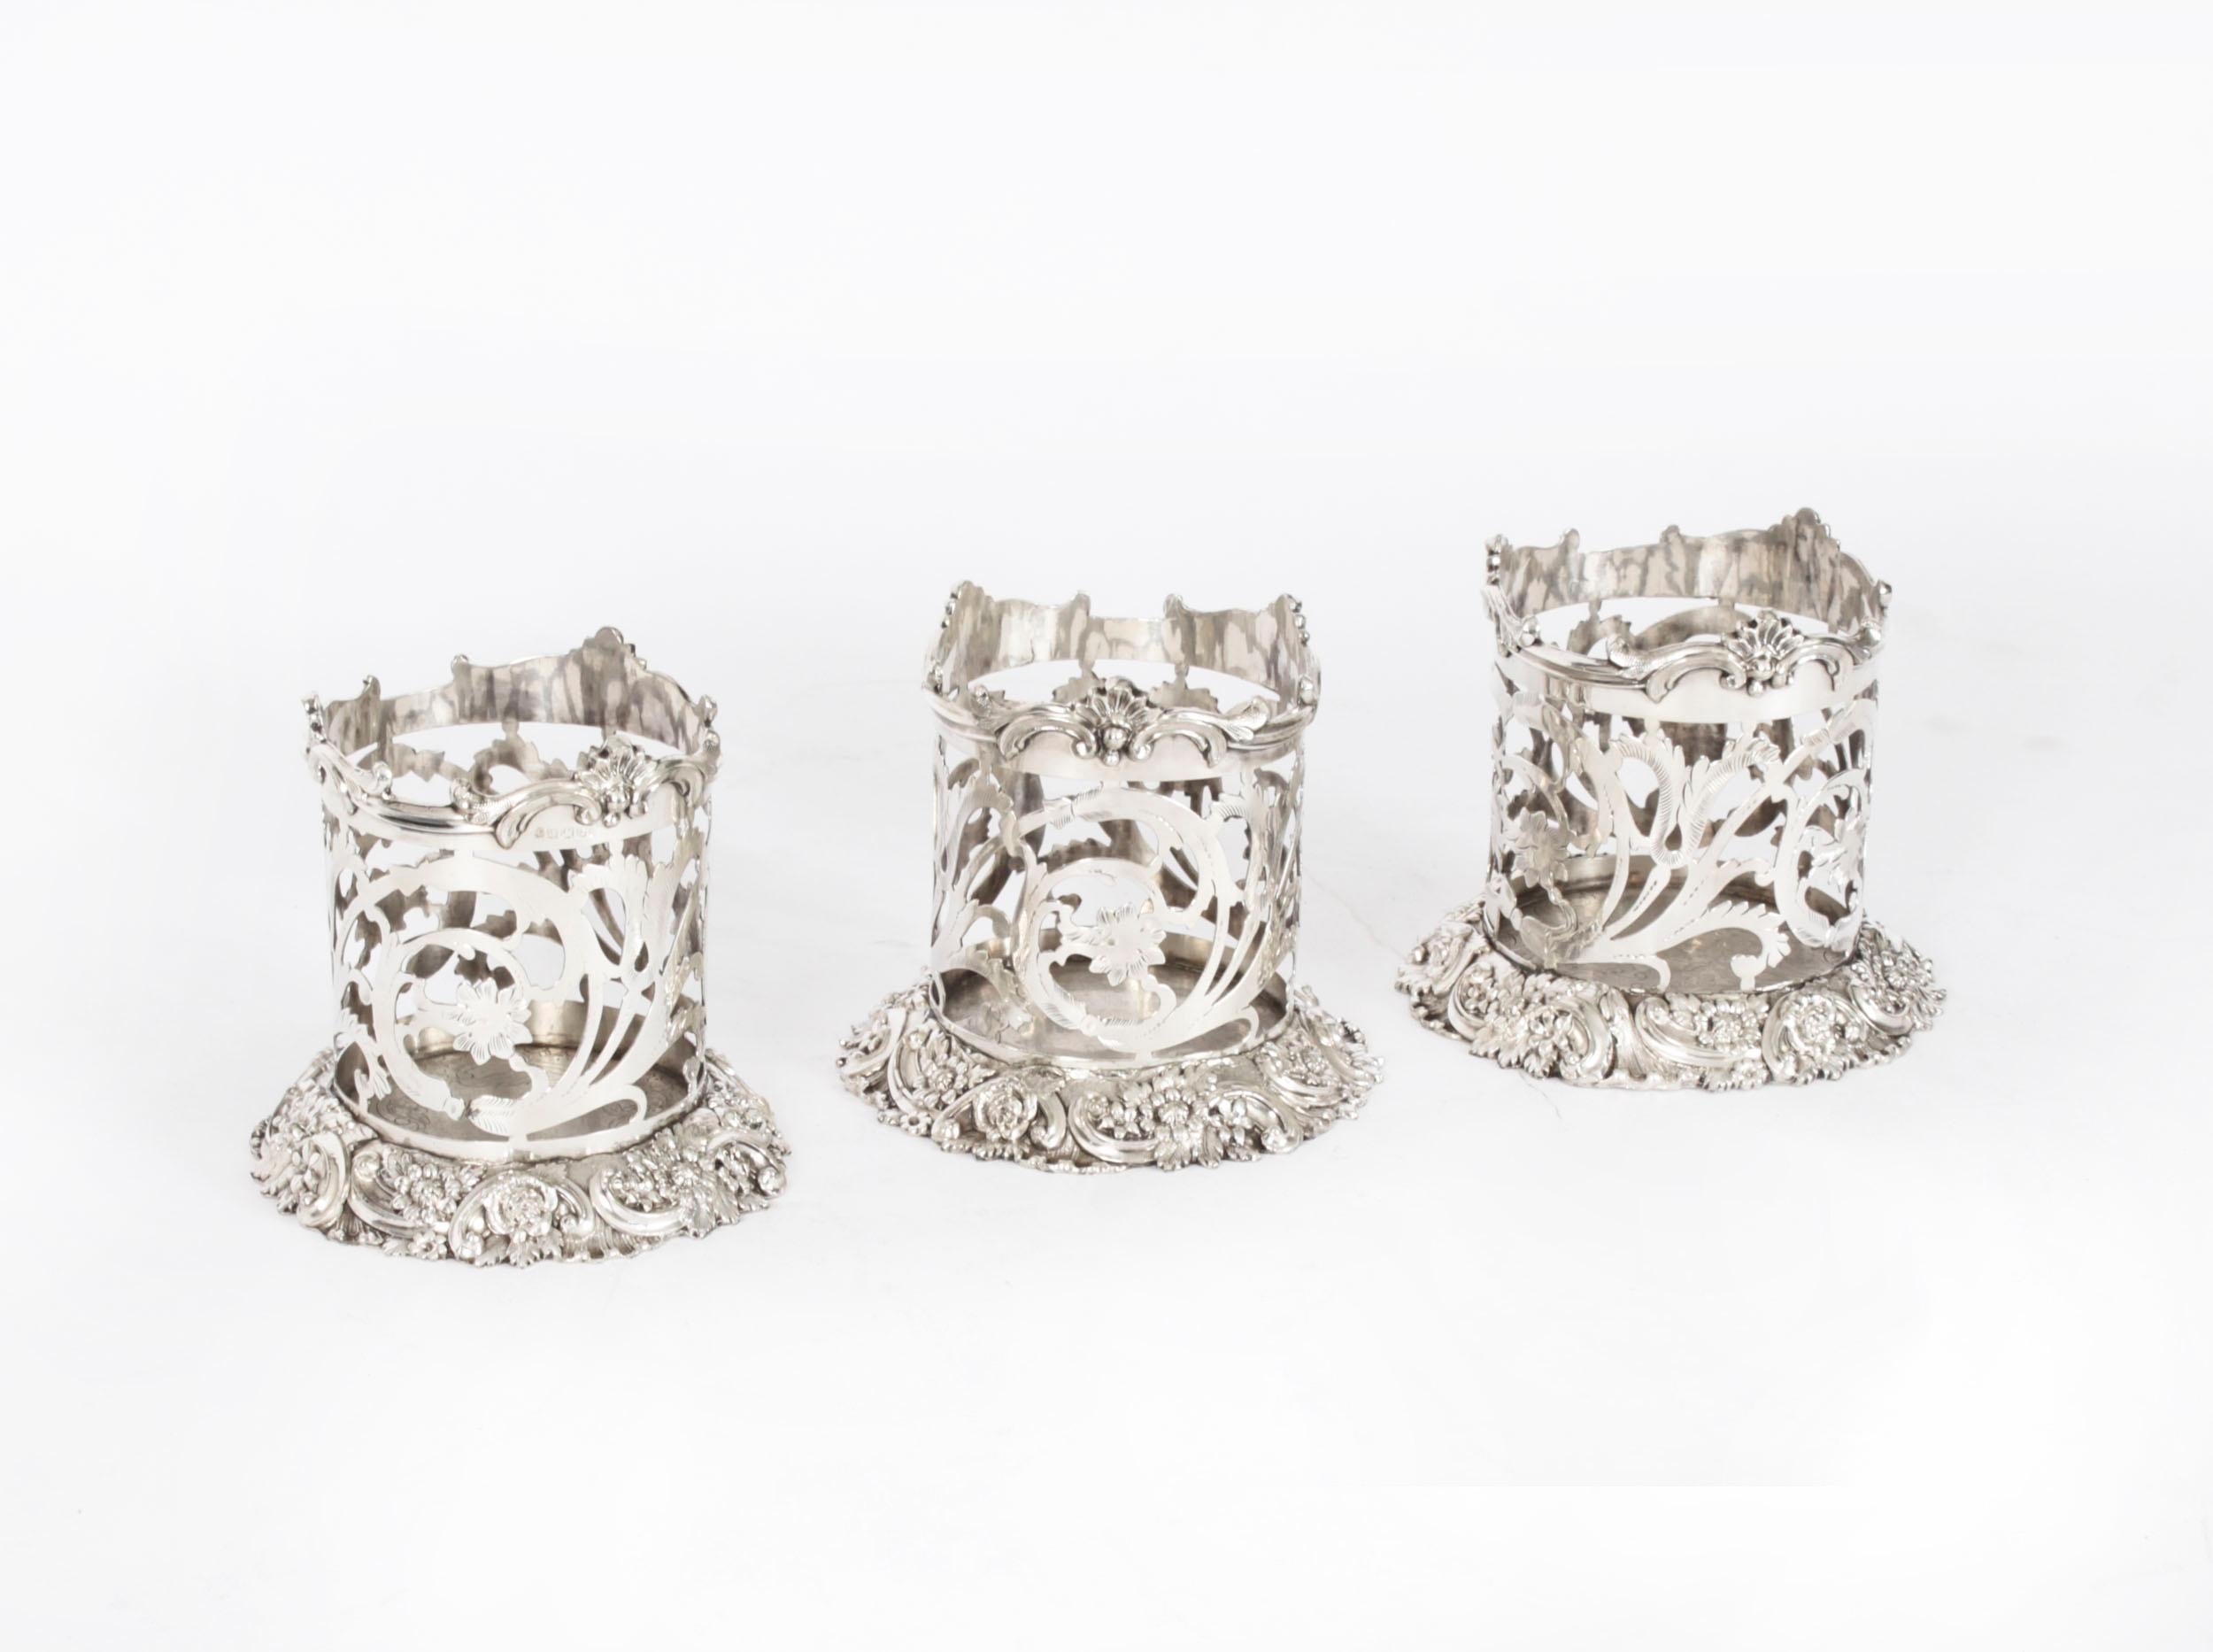 Voici un bel ensemble de trois dessous de bouteille victoriens en métal argenté /  des détenteurs, datant d'environ 1870. 
 
Ils se caractérisent par des côtés cylindriques percés et des bases fortement décorées de motifs floraux et de feuillages